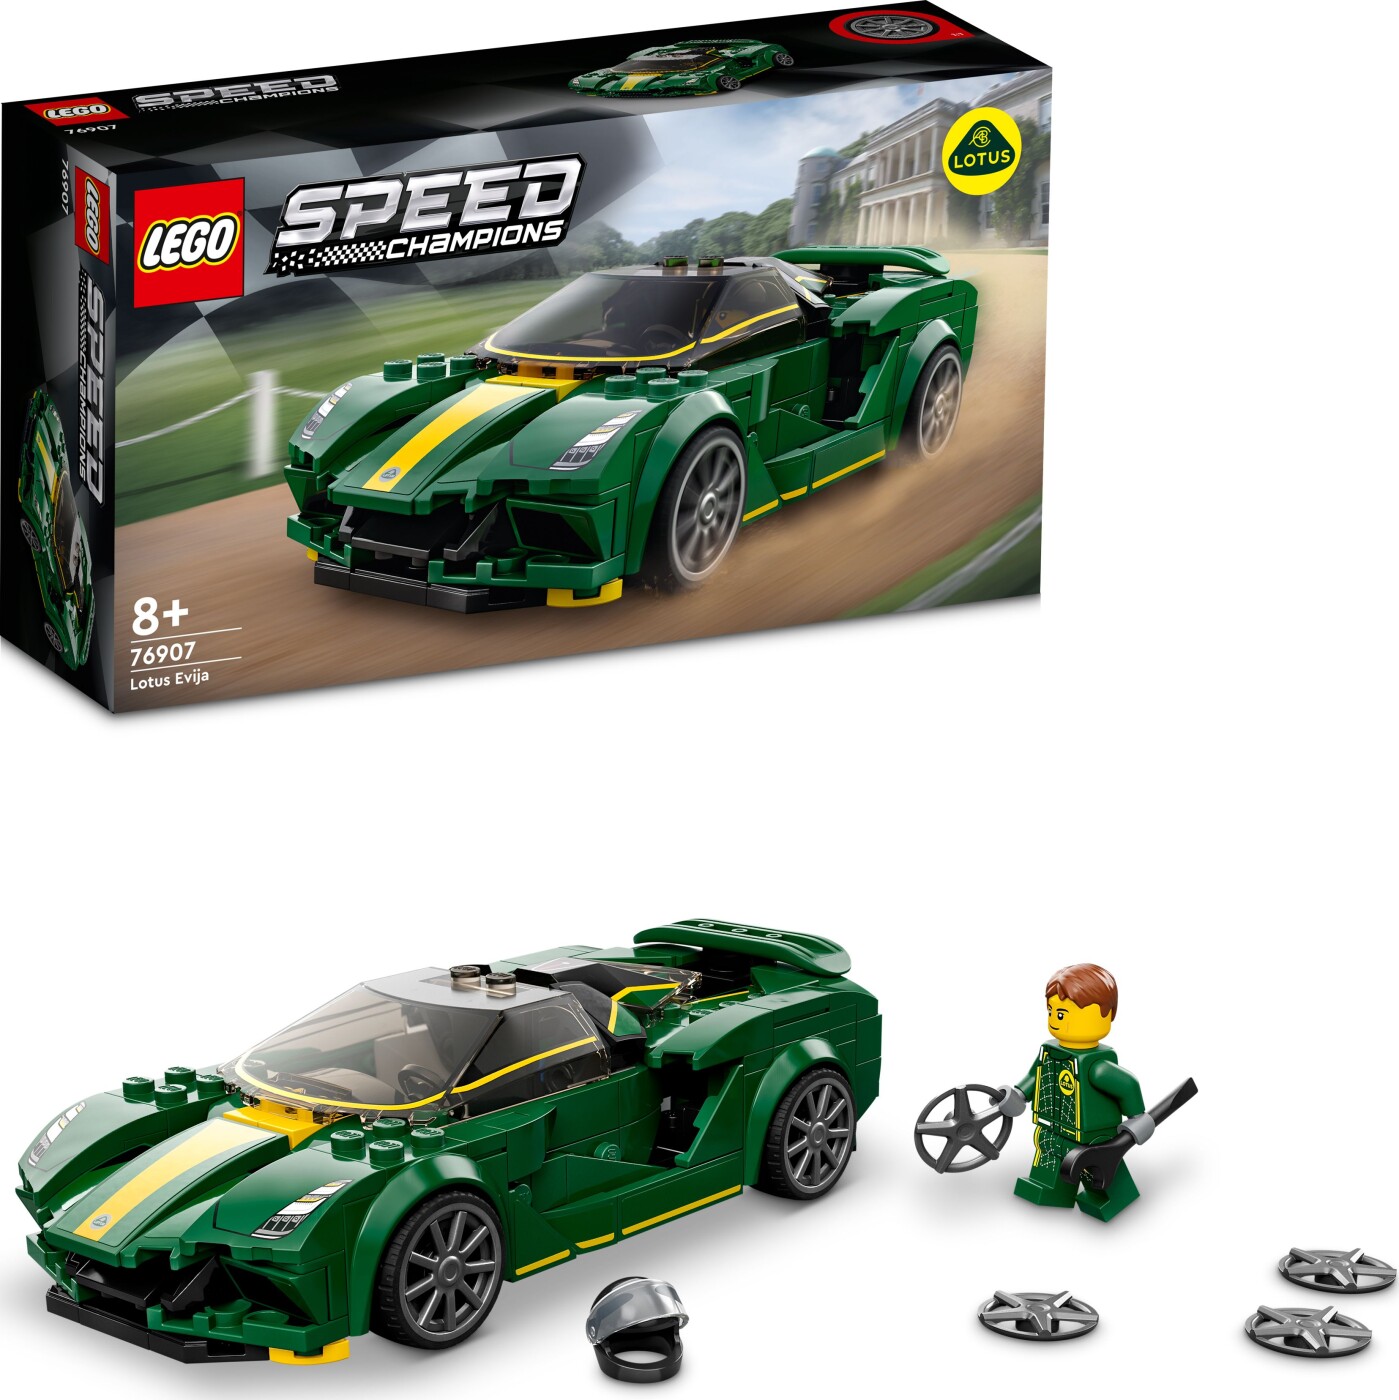 Billede af Lego Speed Champions - Lotus Evija - 76907